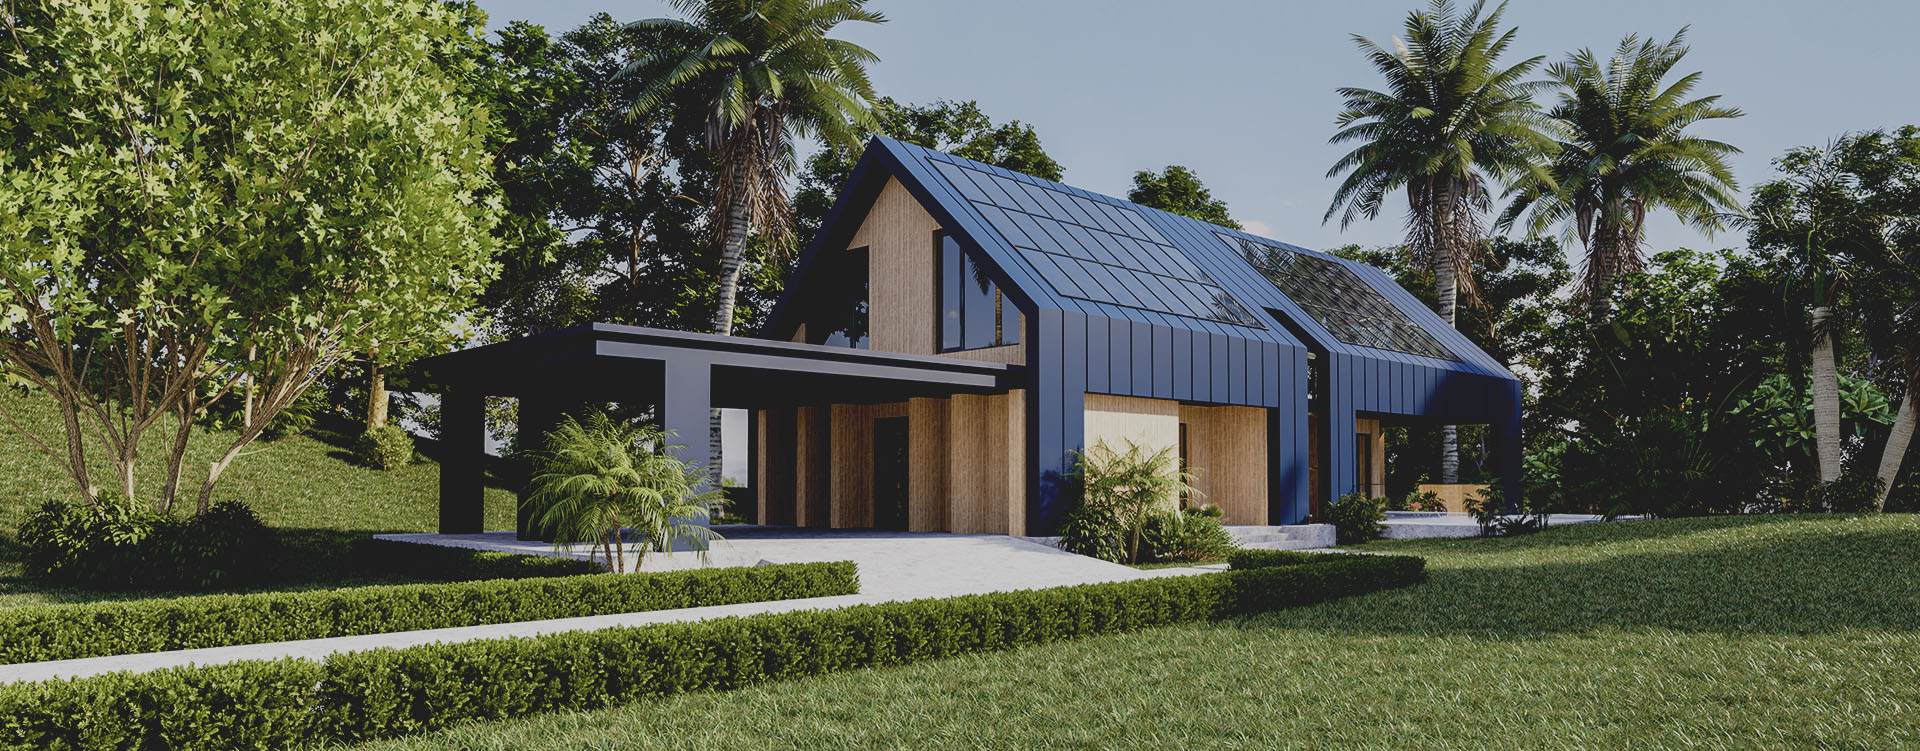 ¿Qué diferencias existen entre la casa pasiva y el diseño solar pasivo?